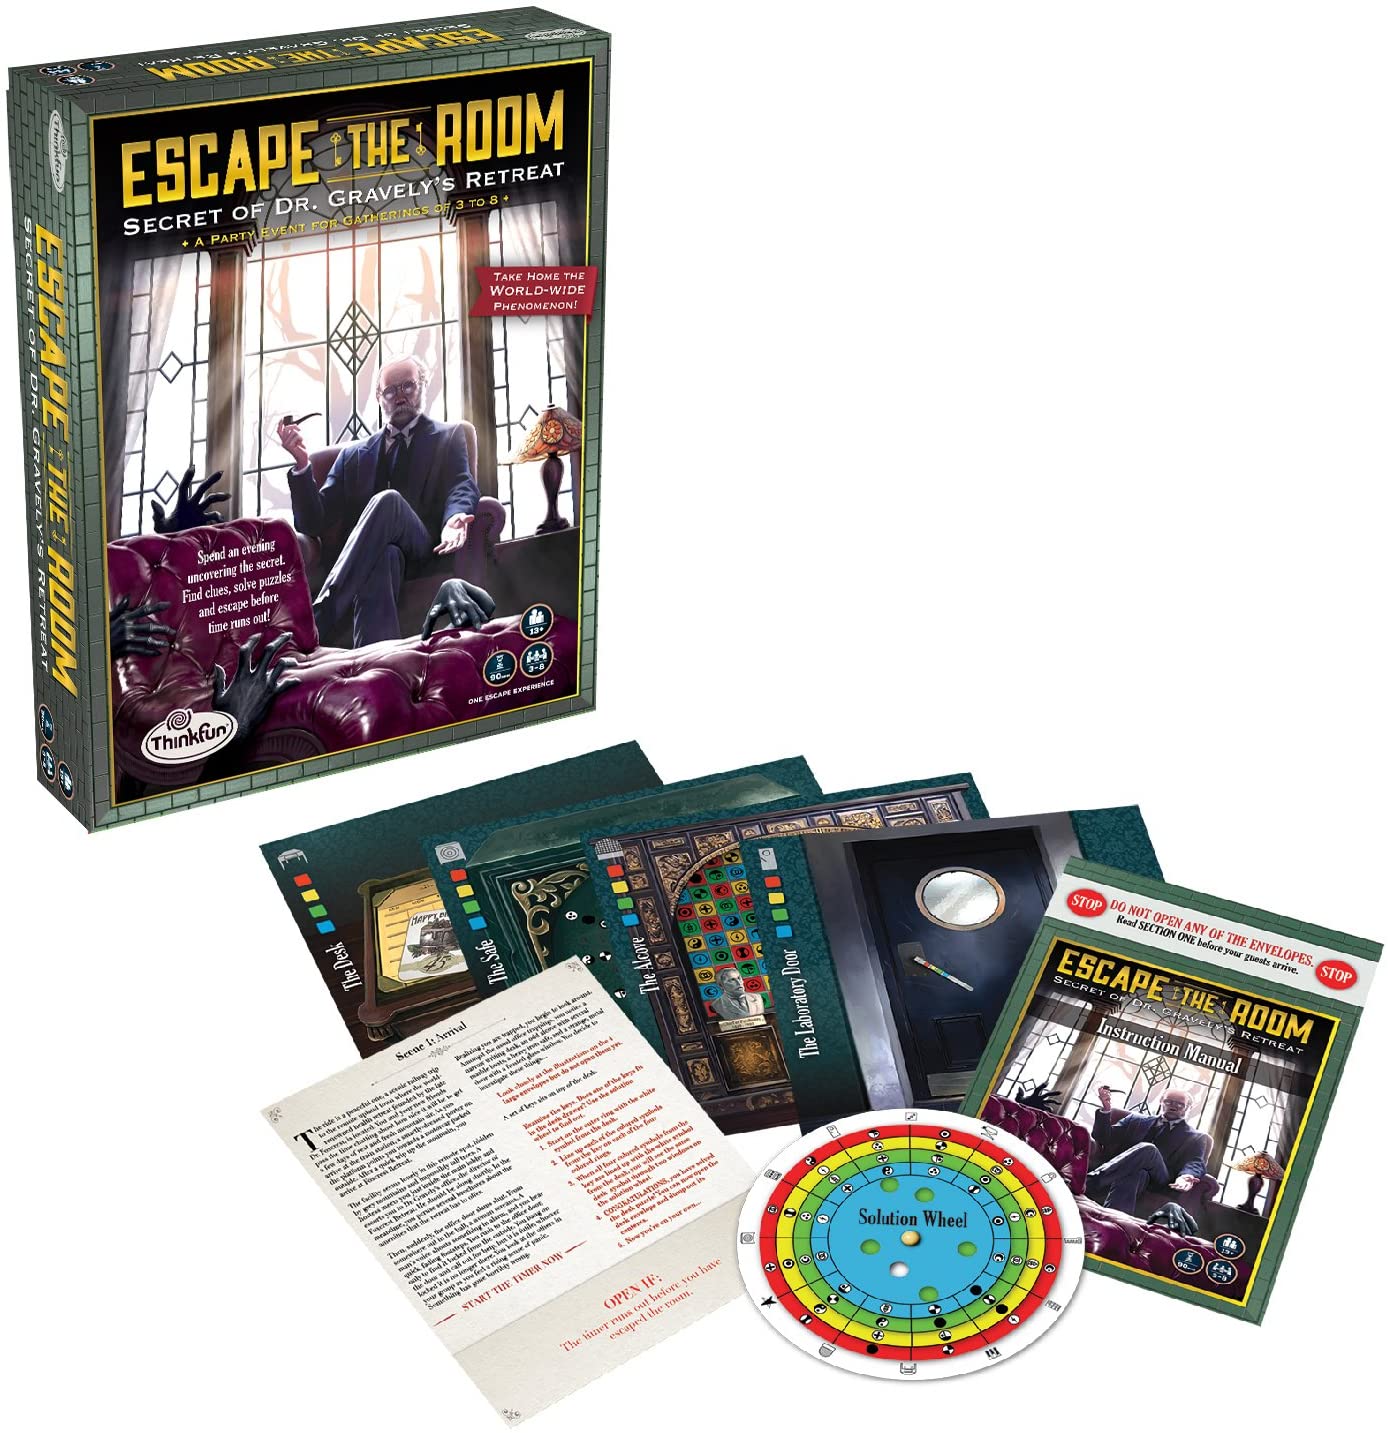 Secret of Dr. Gravely's Retreat - Escape the Room